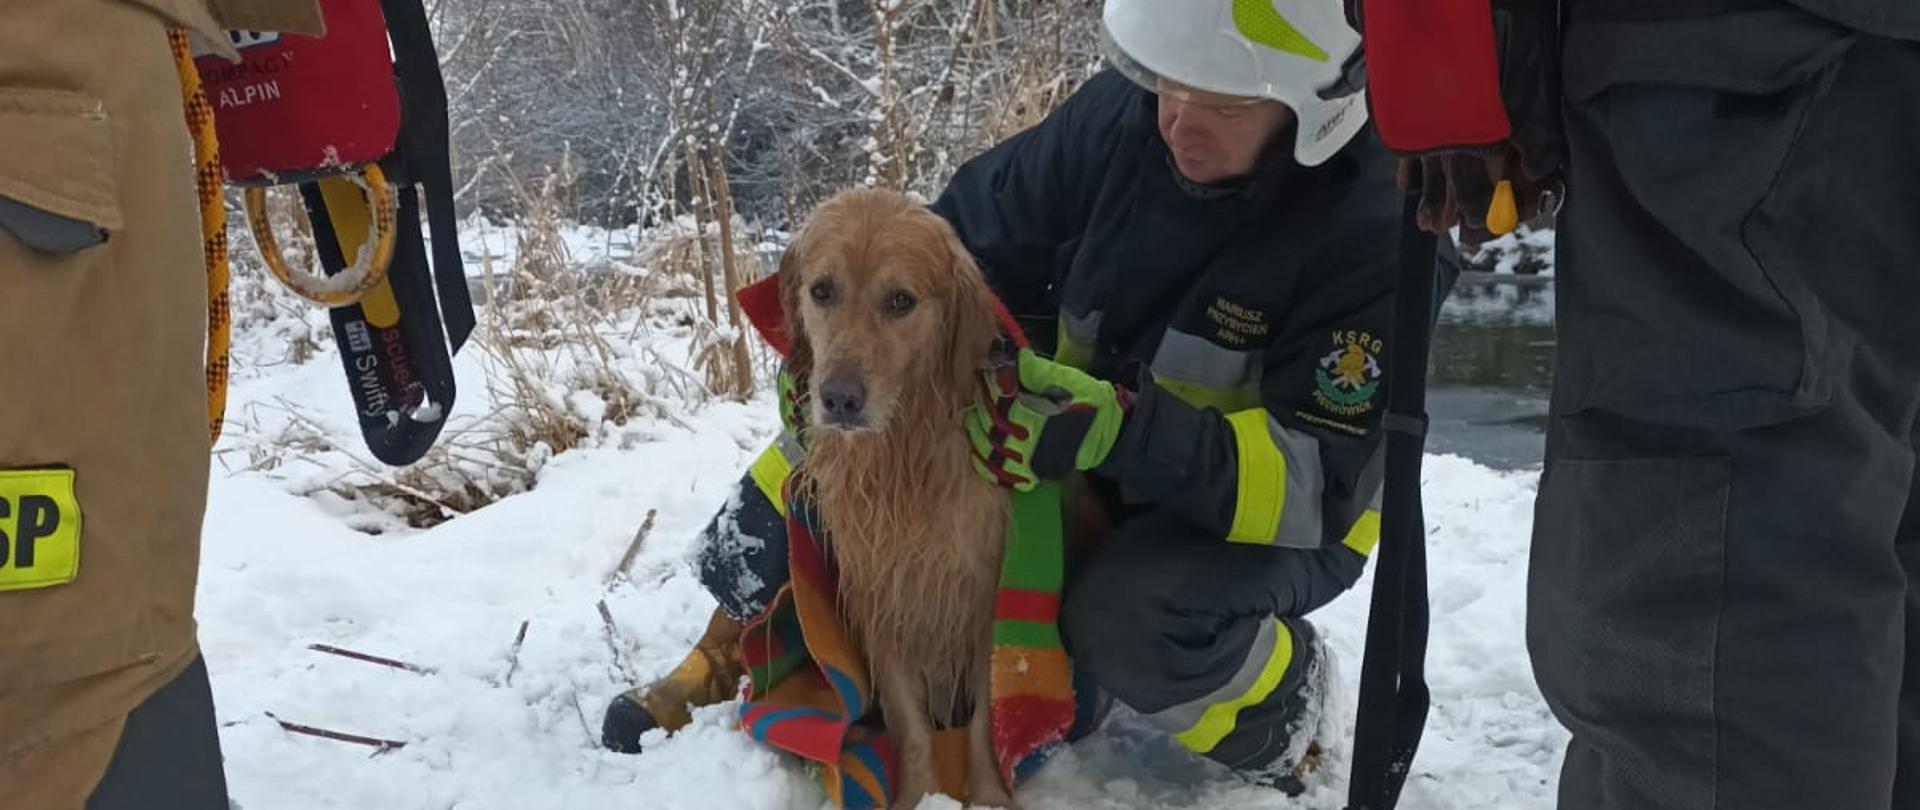 Na zdjęciu widać okrytego kocem przez strażaka psa wydobytego z wody. Pies znajduje się na śniegu. Zdjęcie wykonane w dzień. 